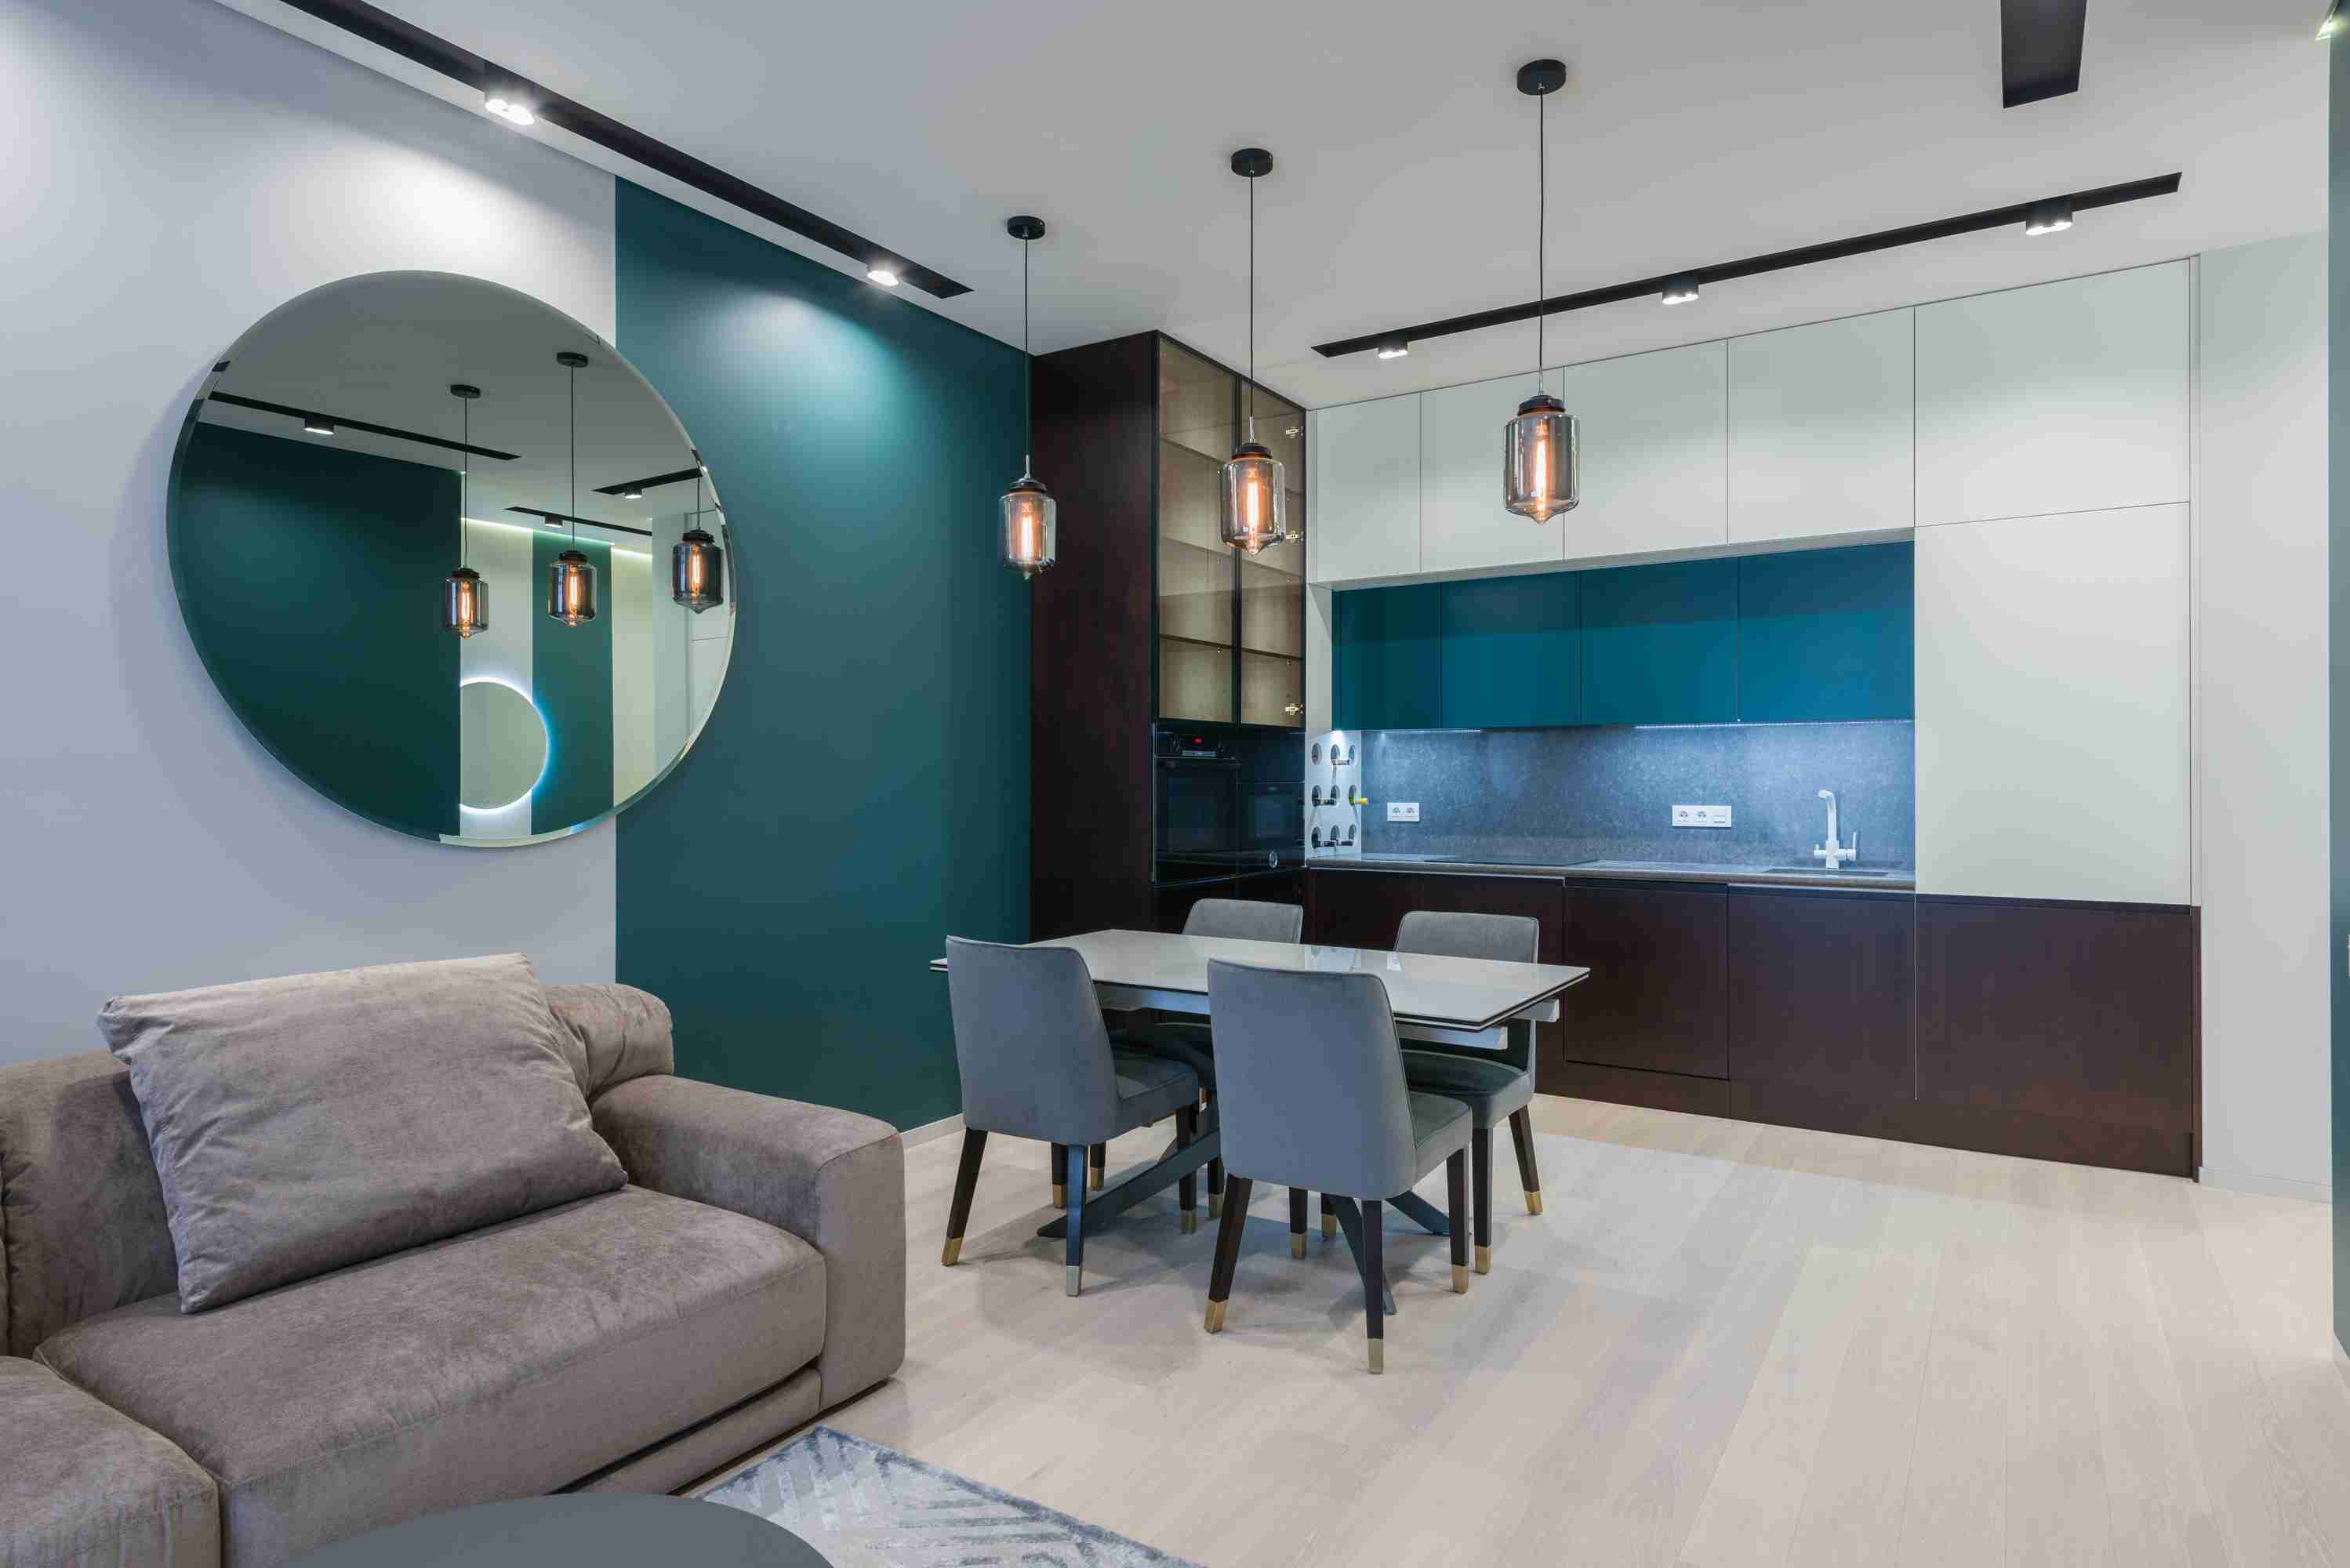 wnętrze salonu w stylu industrialnym / Salon loft w stylu industrialnym - aranżacje 2021